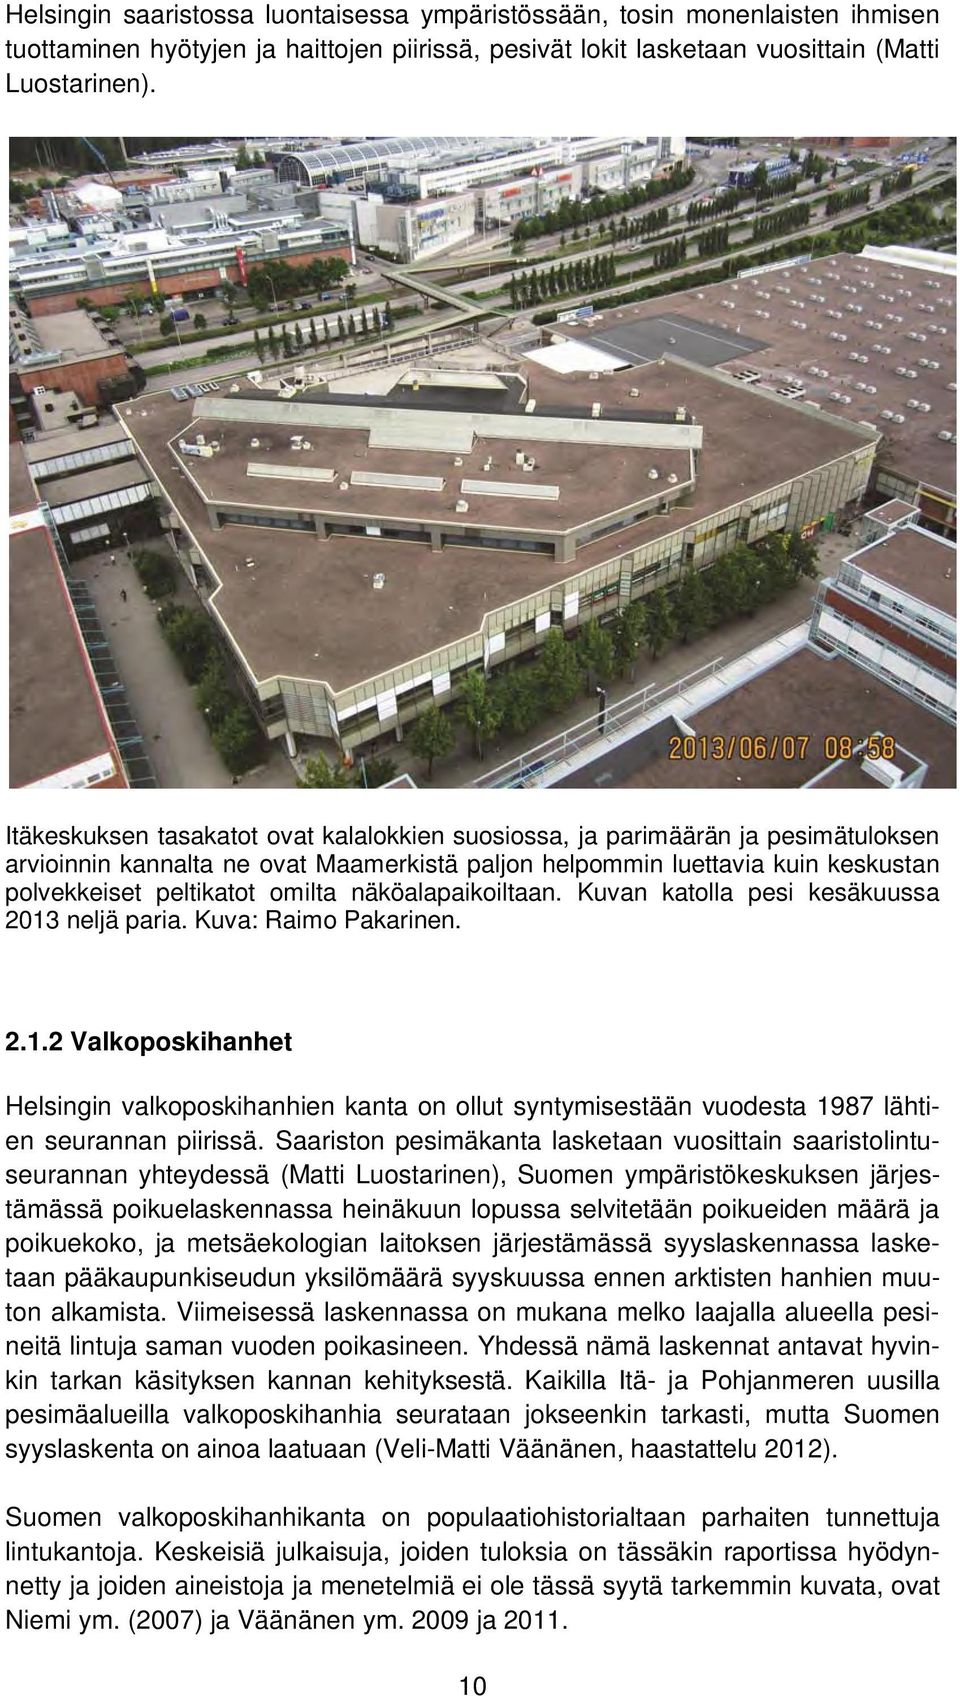 näköalapaikoiltaan. Kuvan katolla pesi kesäkuussa 213 neljä paria. Kuva: Raimo Pakarinen. 2.1.2 Valkoposkihanhet Helsingin valkoposkihanhien kanta on ollut syntymisestään vuodesta 1987 lähtien seurannan piirissä.